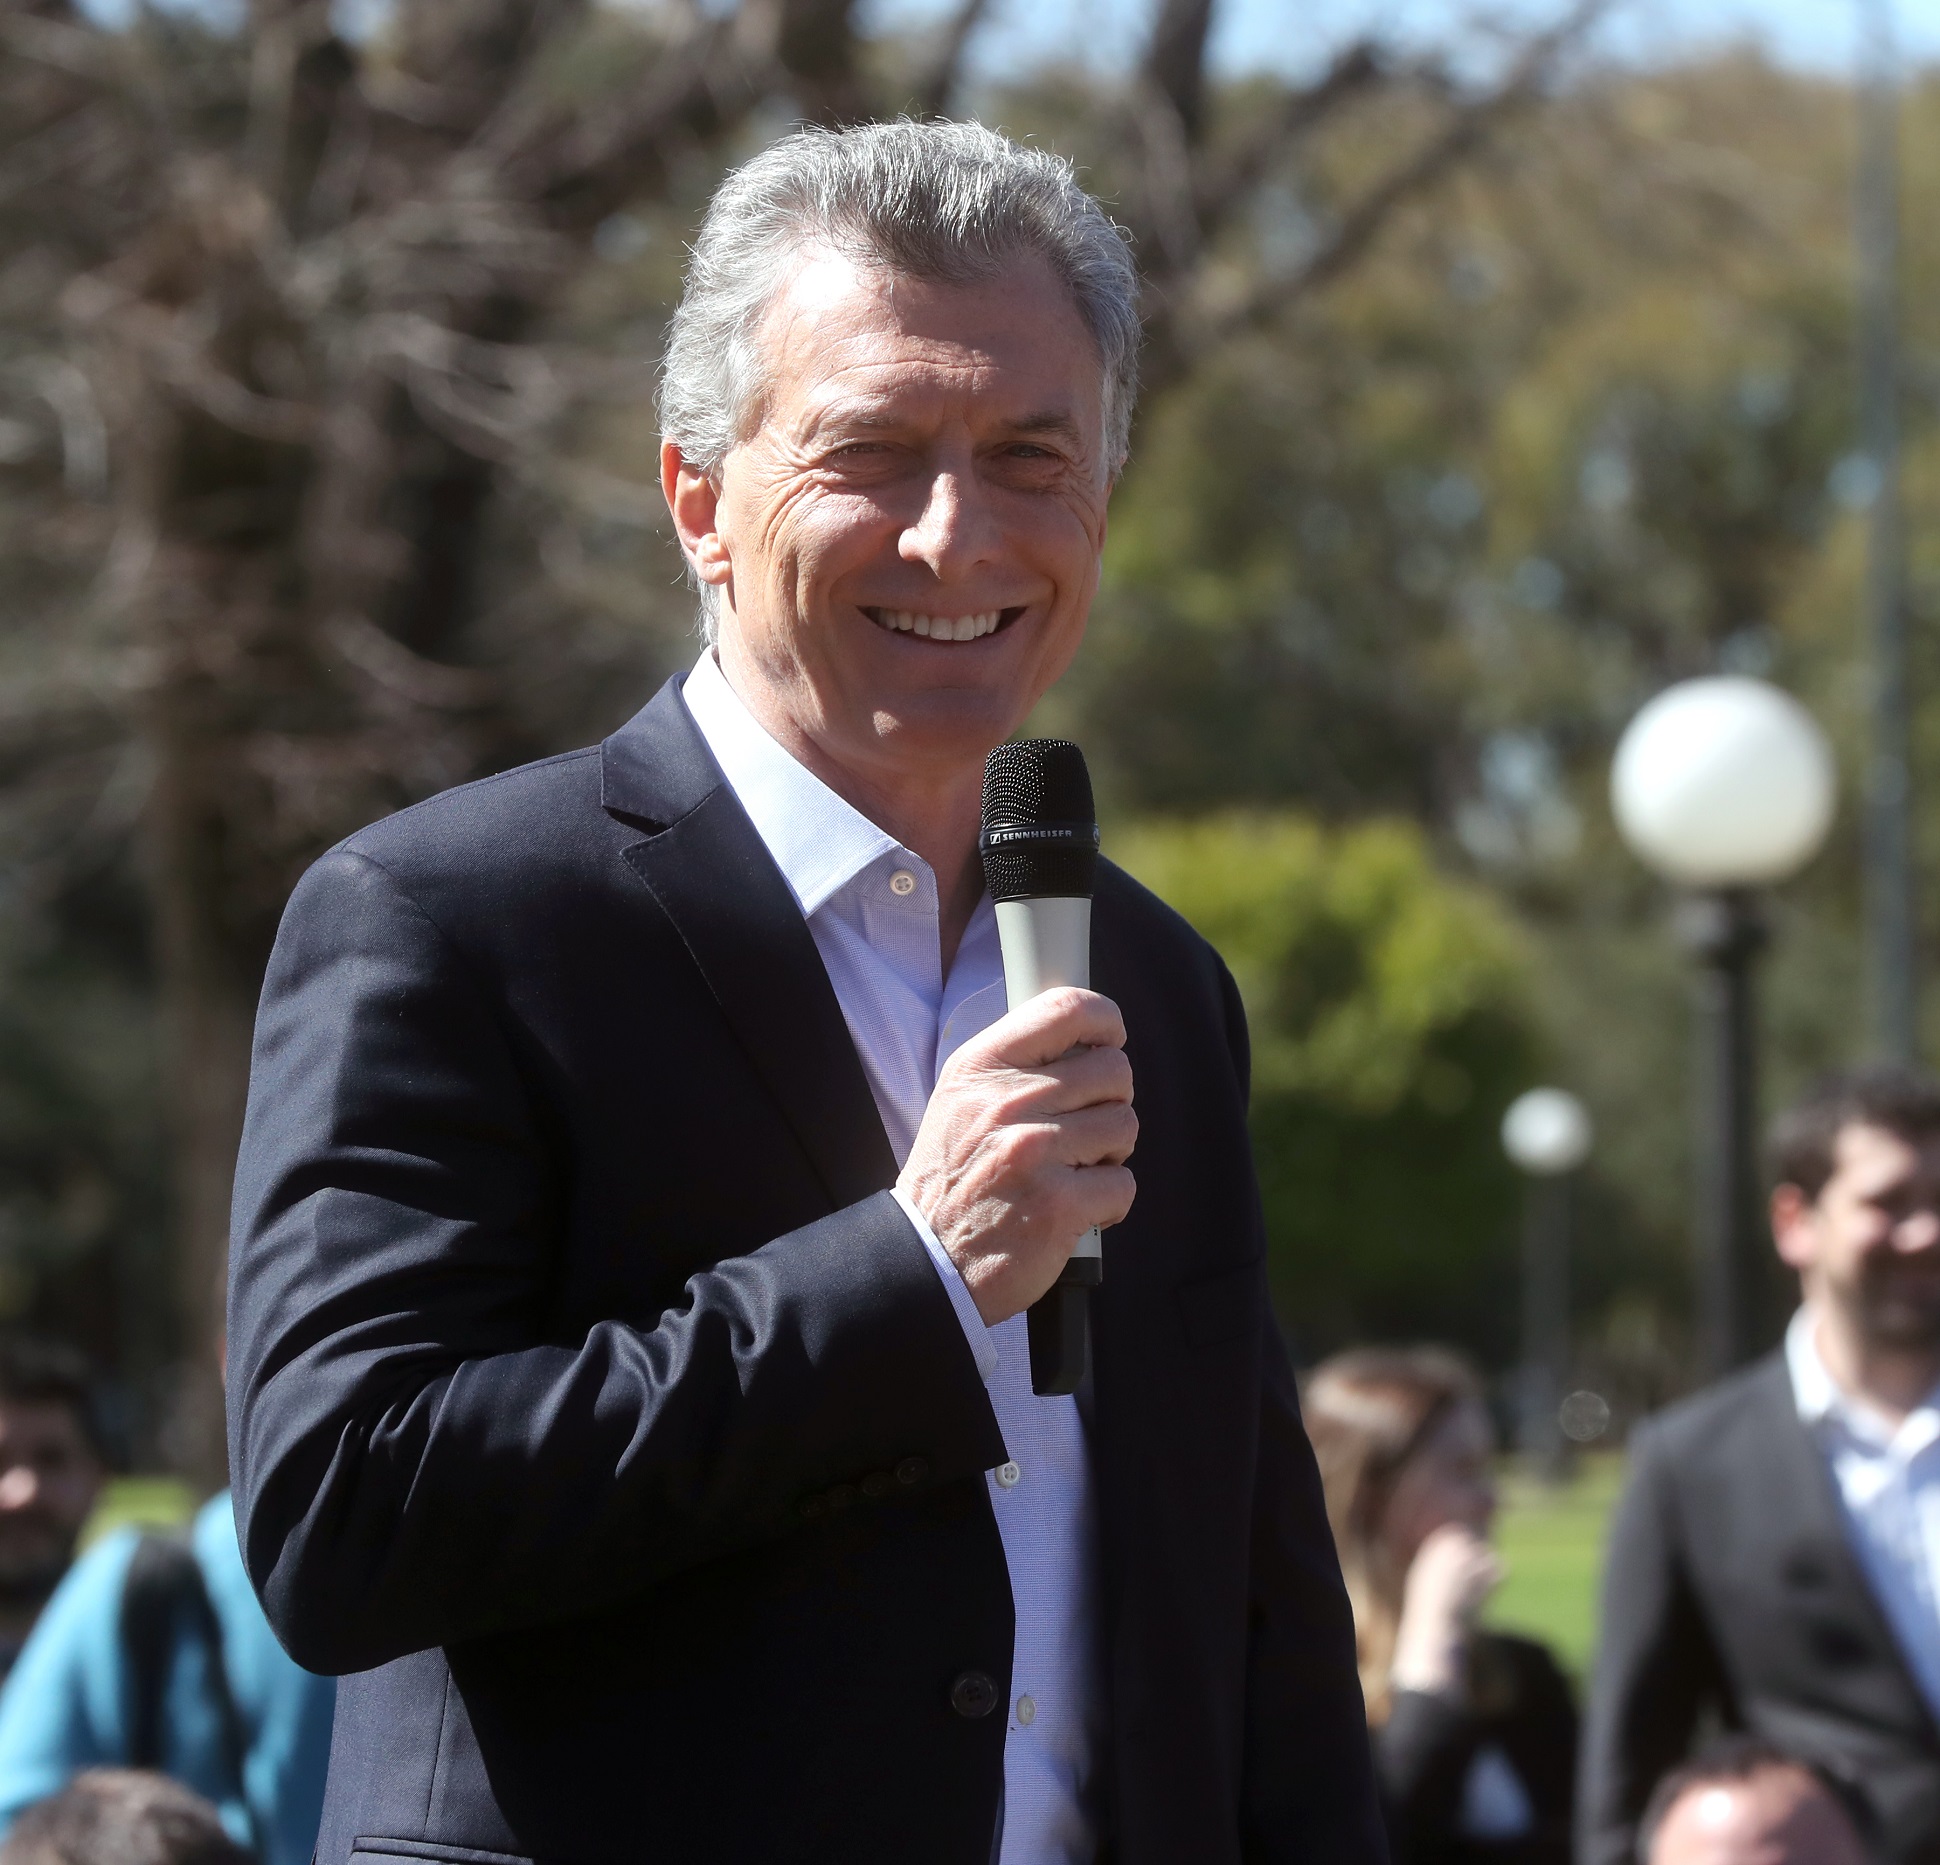 Macri destacó que la Argentina es uno de los países que más avanzó frente a los desafíos del cambio climático